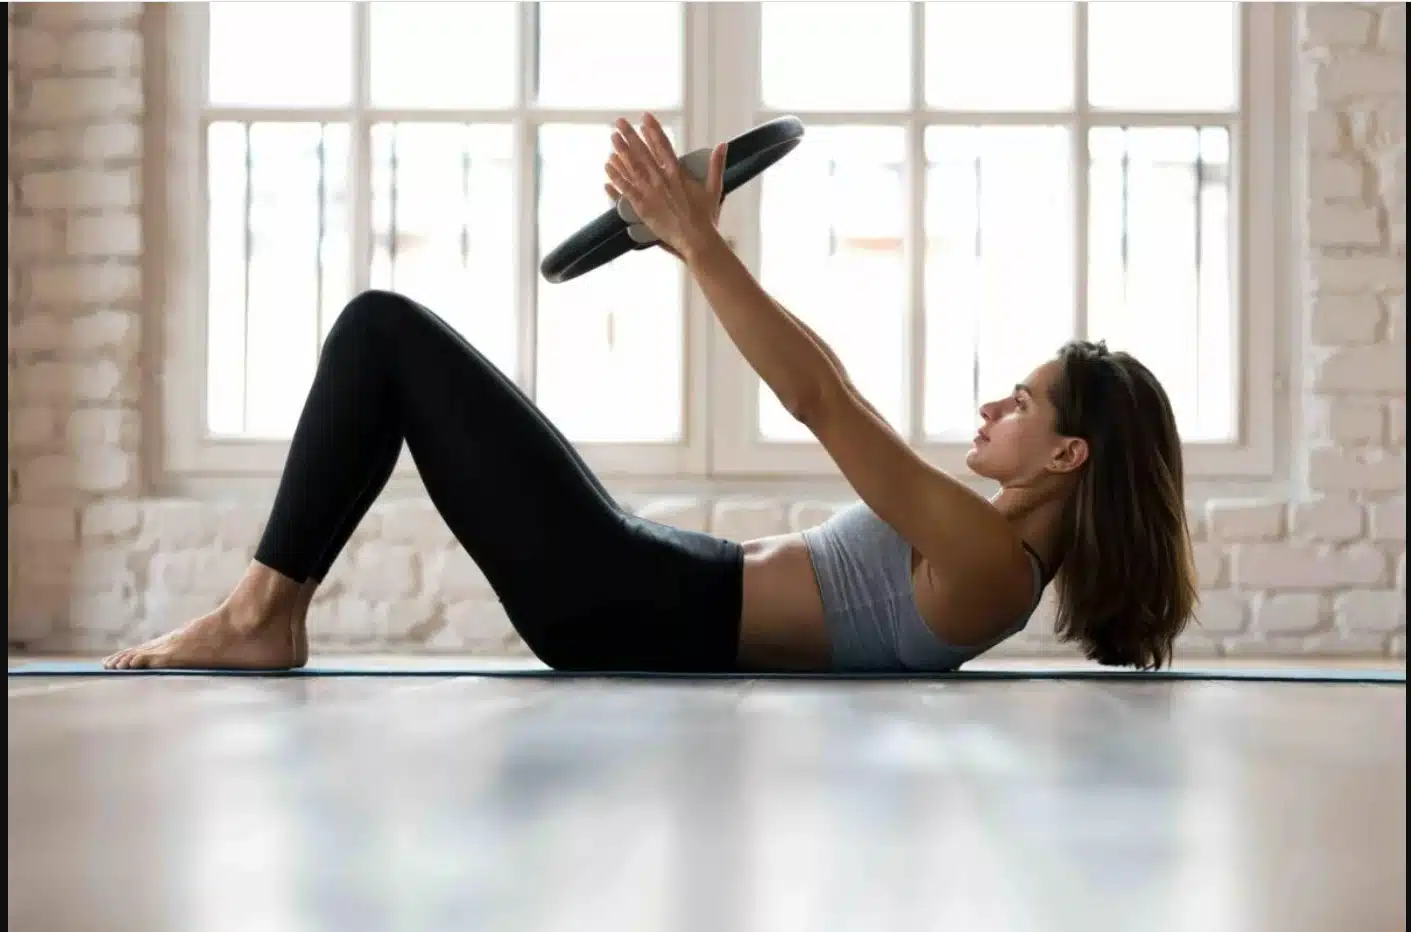 Pilates môže pozitívne ovplyvniť vaše fyzické a duševné zdravie. Je jednou z najpopulárnejších cvičebných metód používaných po celom svete.